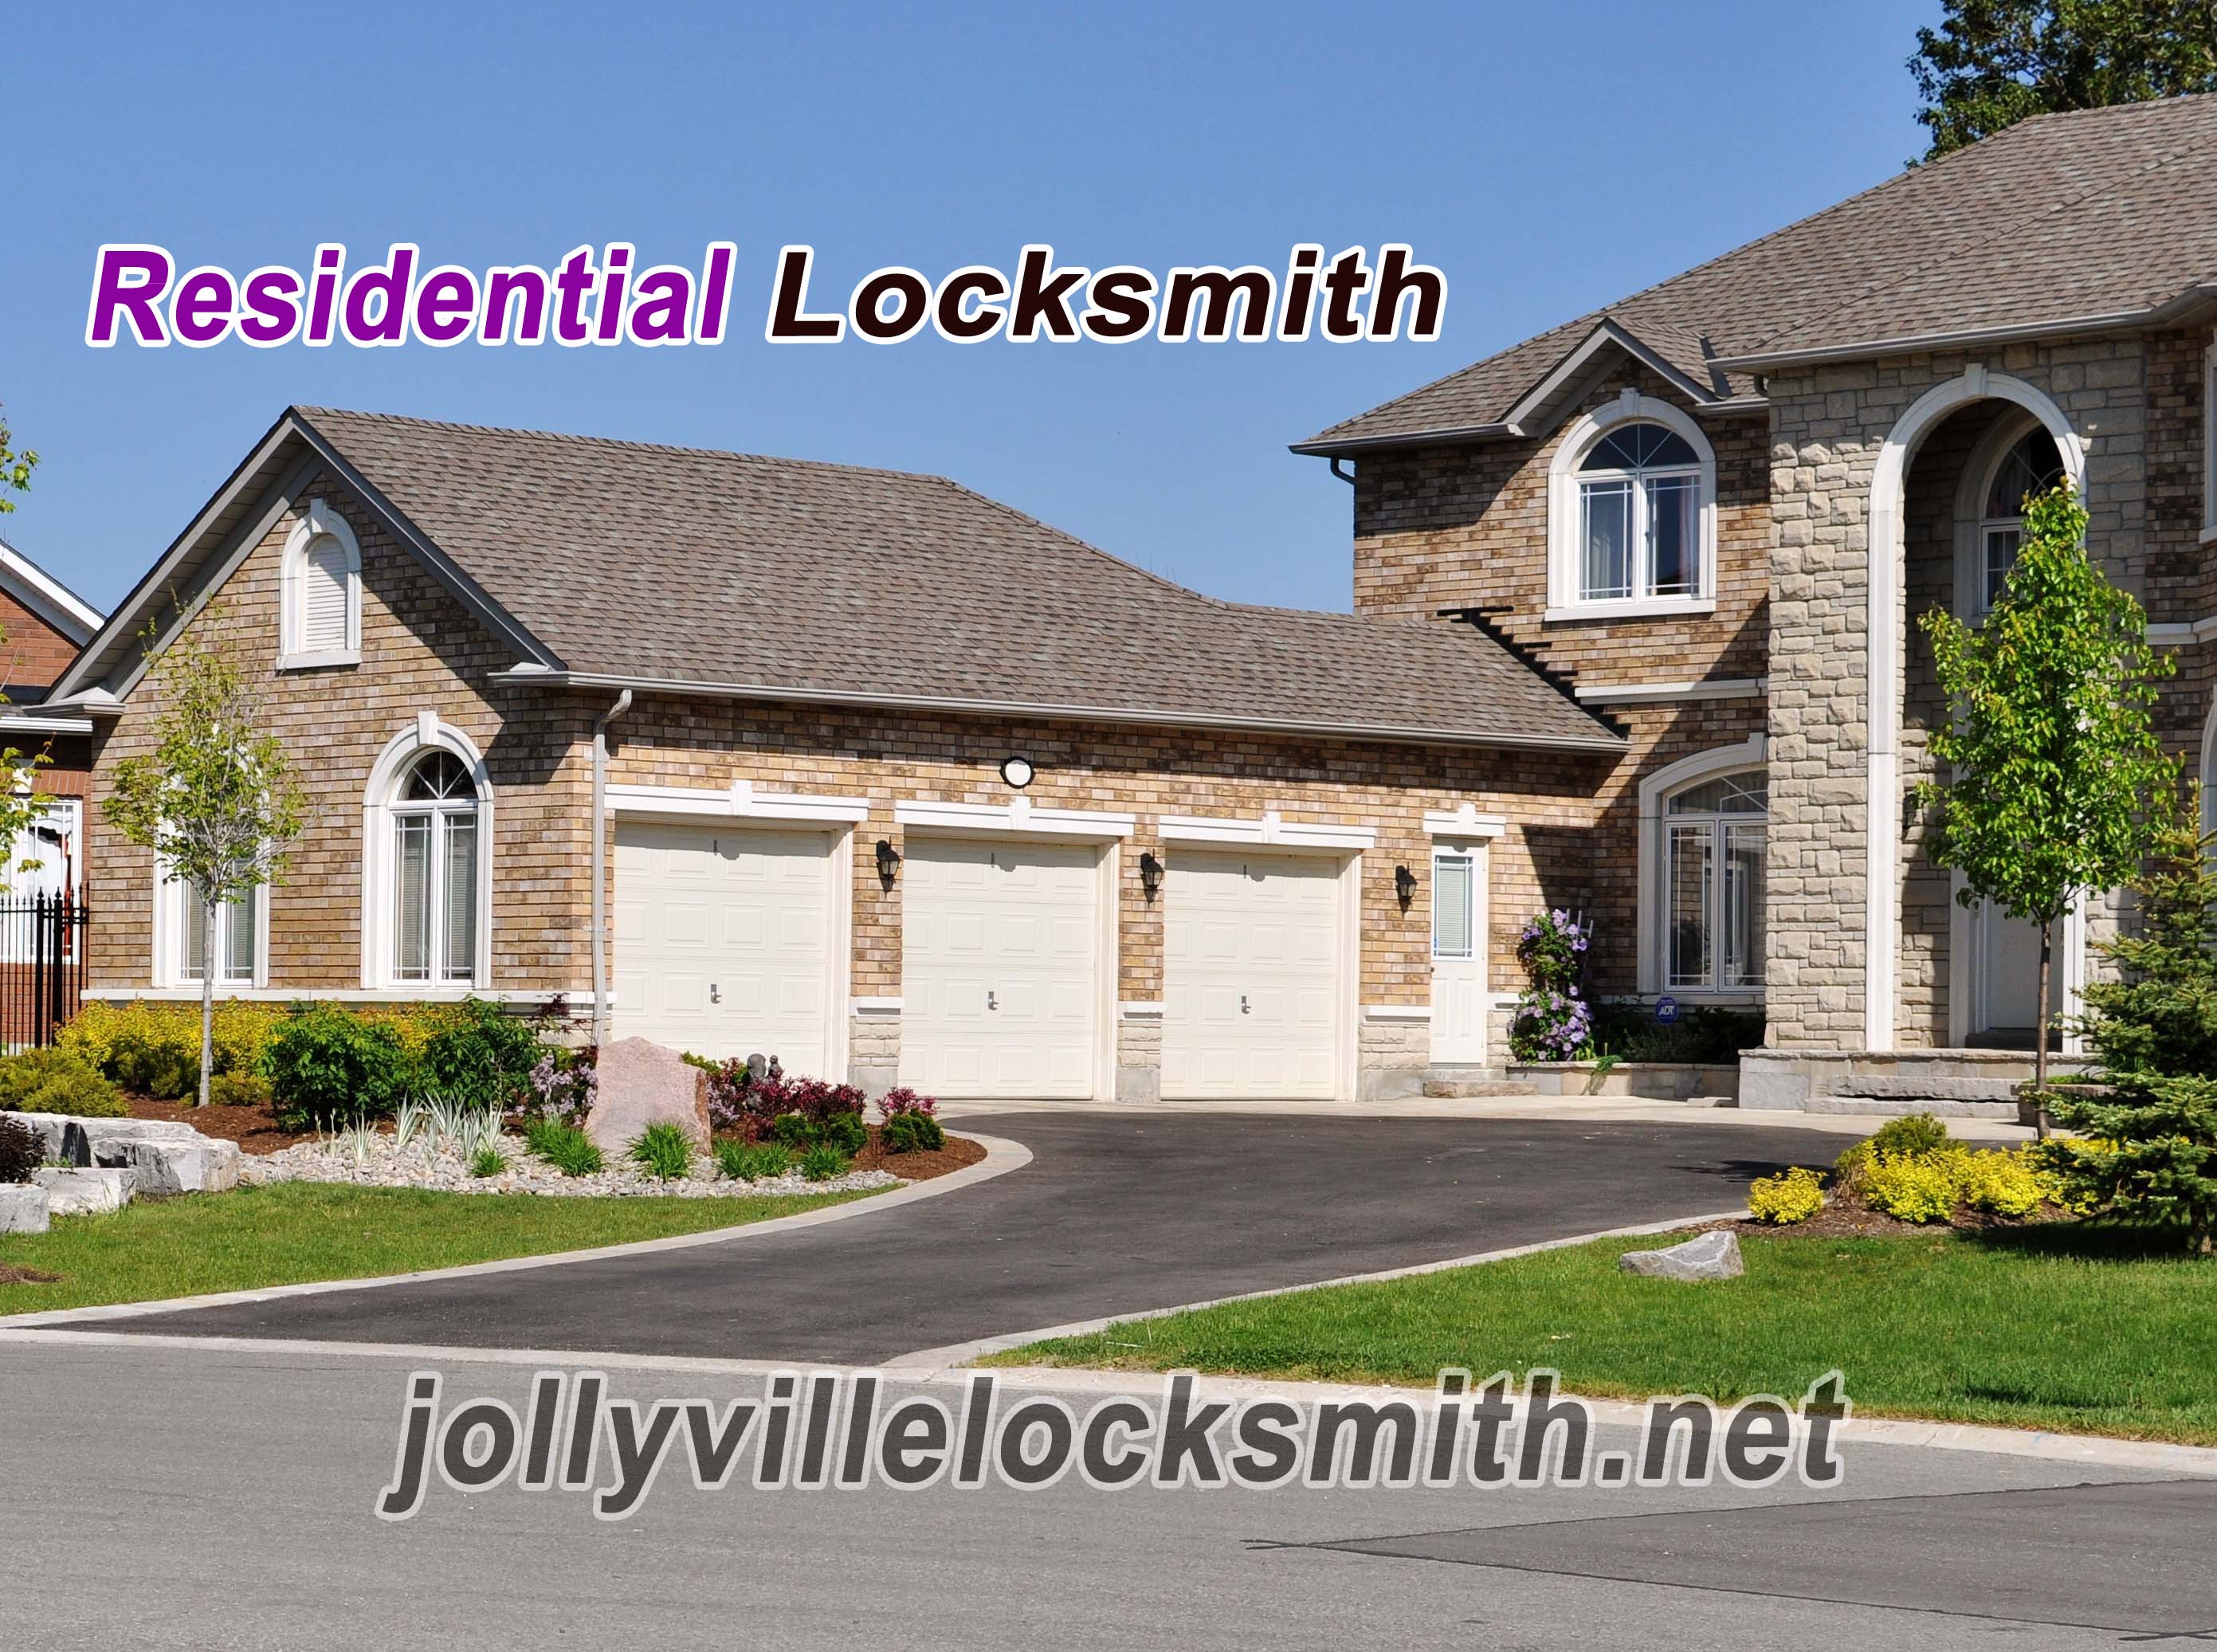 Residential Jollyville Locksmith